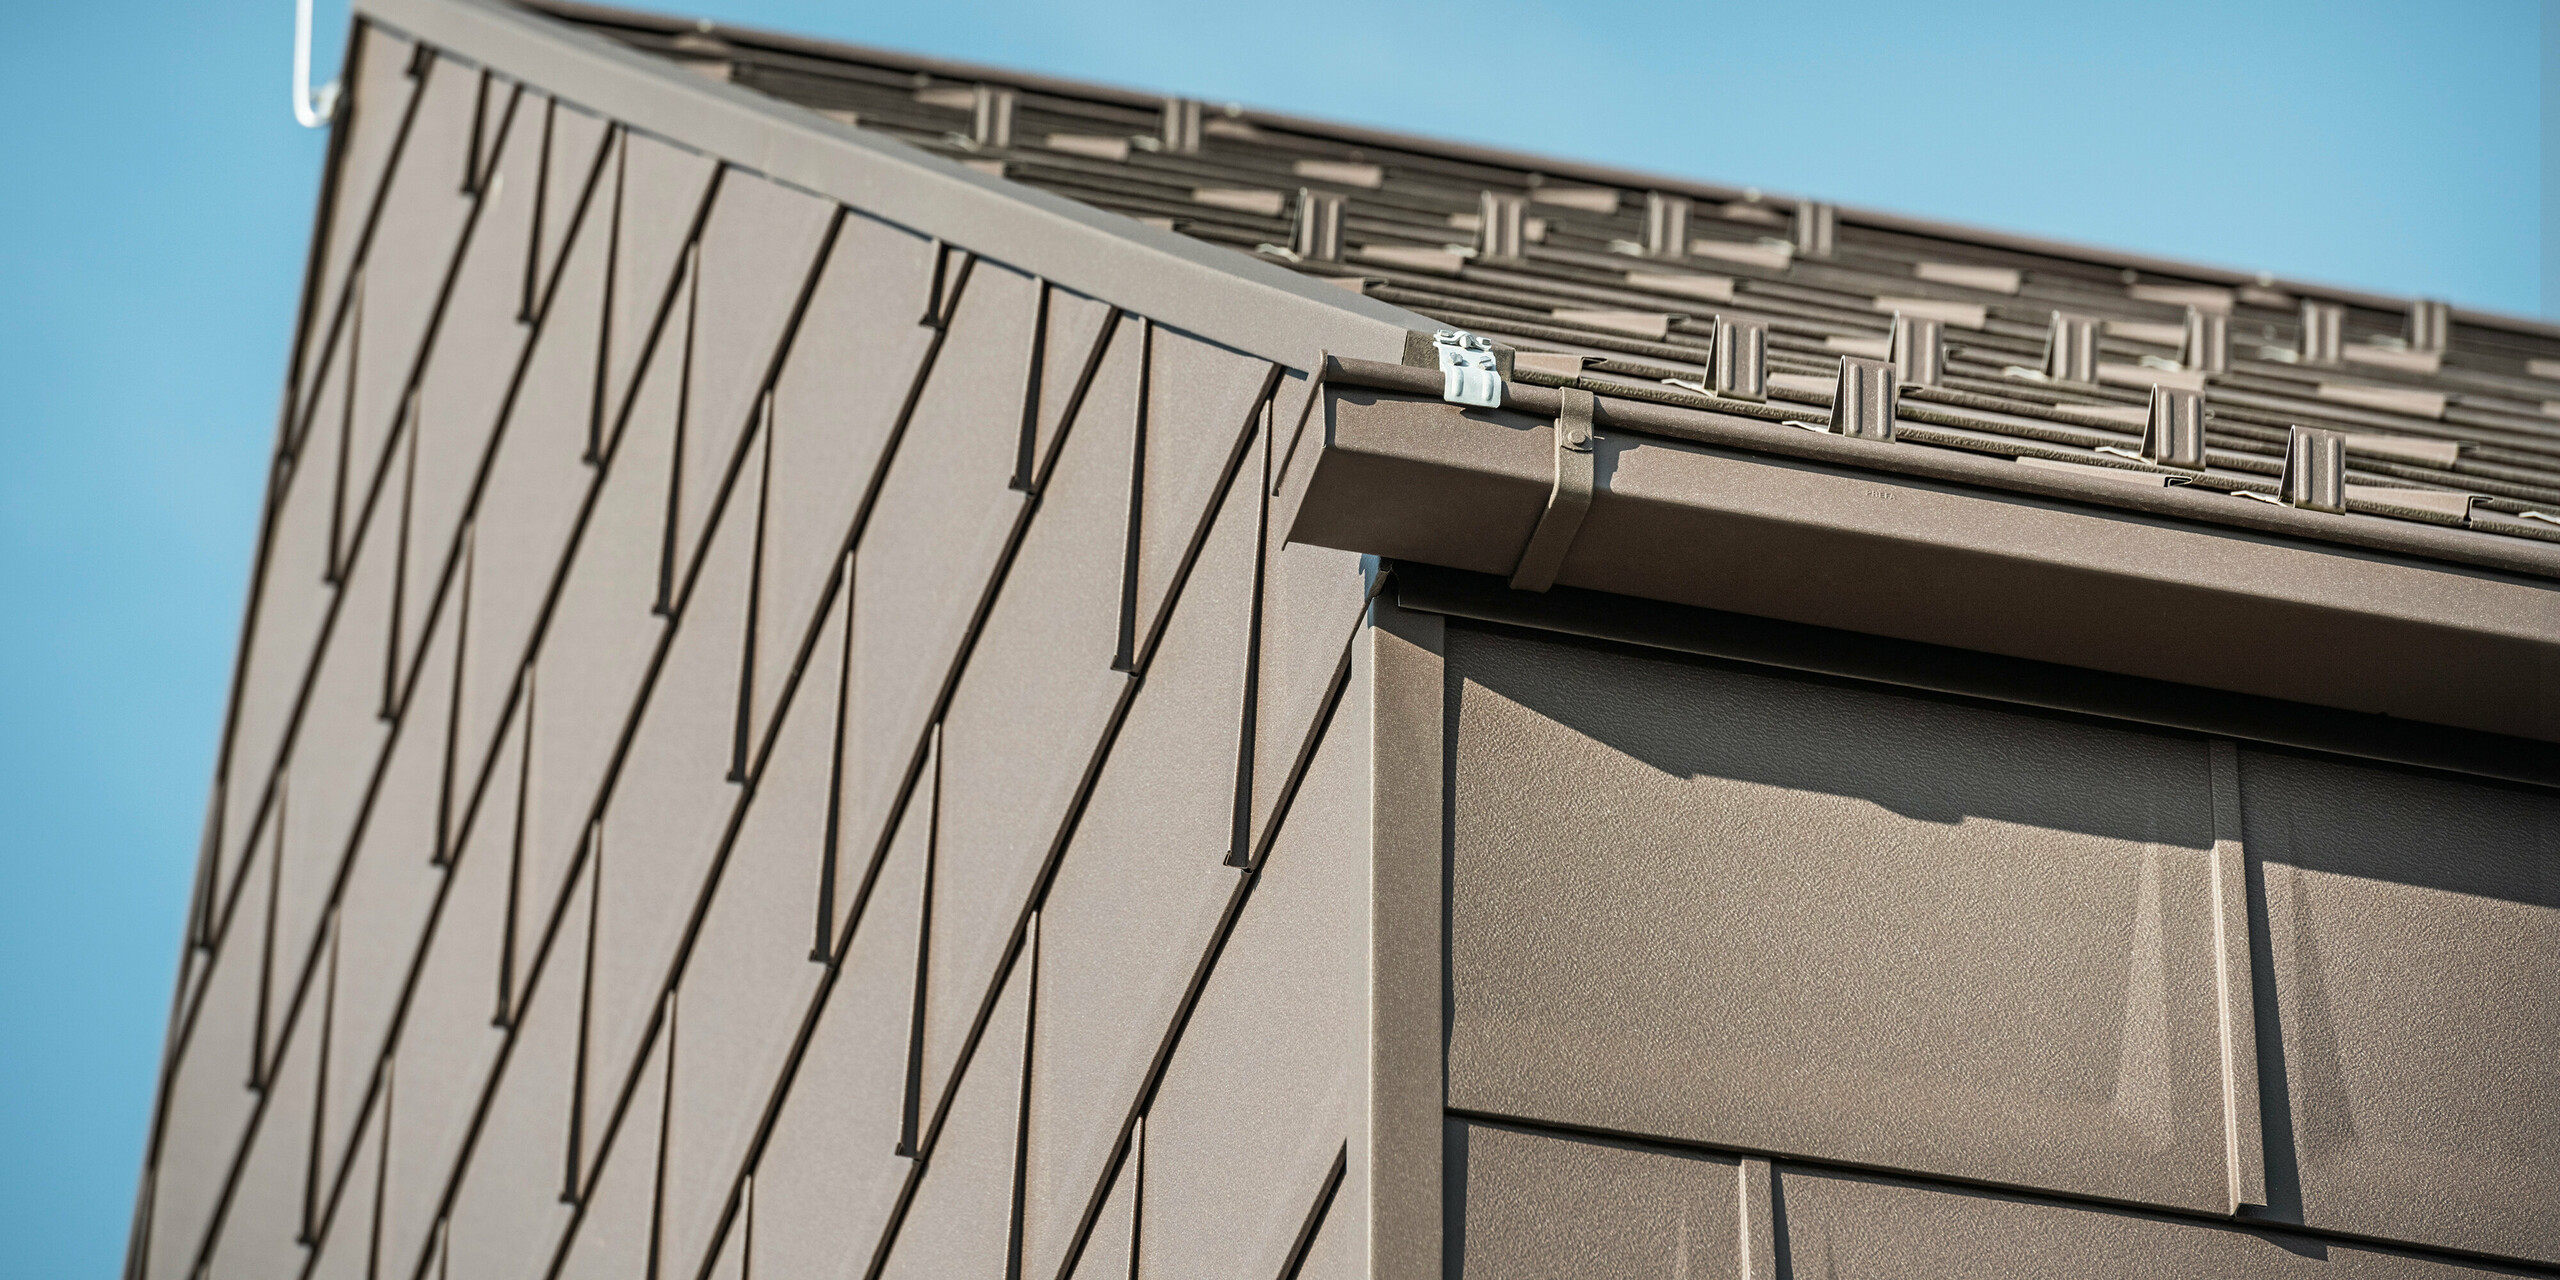 Detailaufnahme der Dachentwässerung eines Hauses in Neukirchen, Österreich, mit einer PREFA Kastenrinne. Das Dachpaneel R.16 in der braunen Farbe P.10 bildet nicht nur das Dach, sondern schmückt auch die Fassade und schafft ein einheitliches und elegantes Erscheinungsbild. Diese Nahaufnahme zeigt die Präzision und Qualität der PREFA Aluminiumprodukte, die Design und Funktionalität für ein modernes Wohnkonzept verbinden.